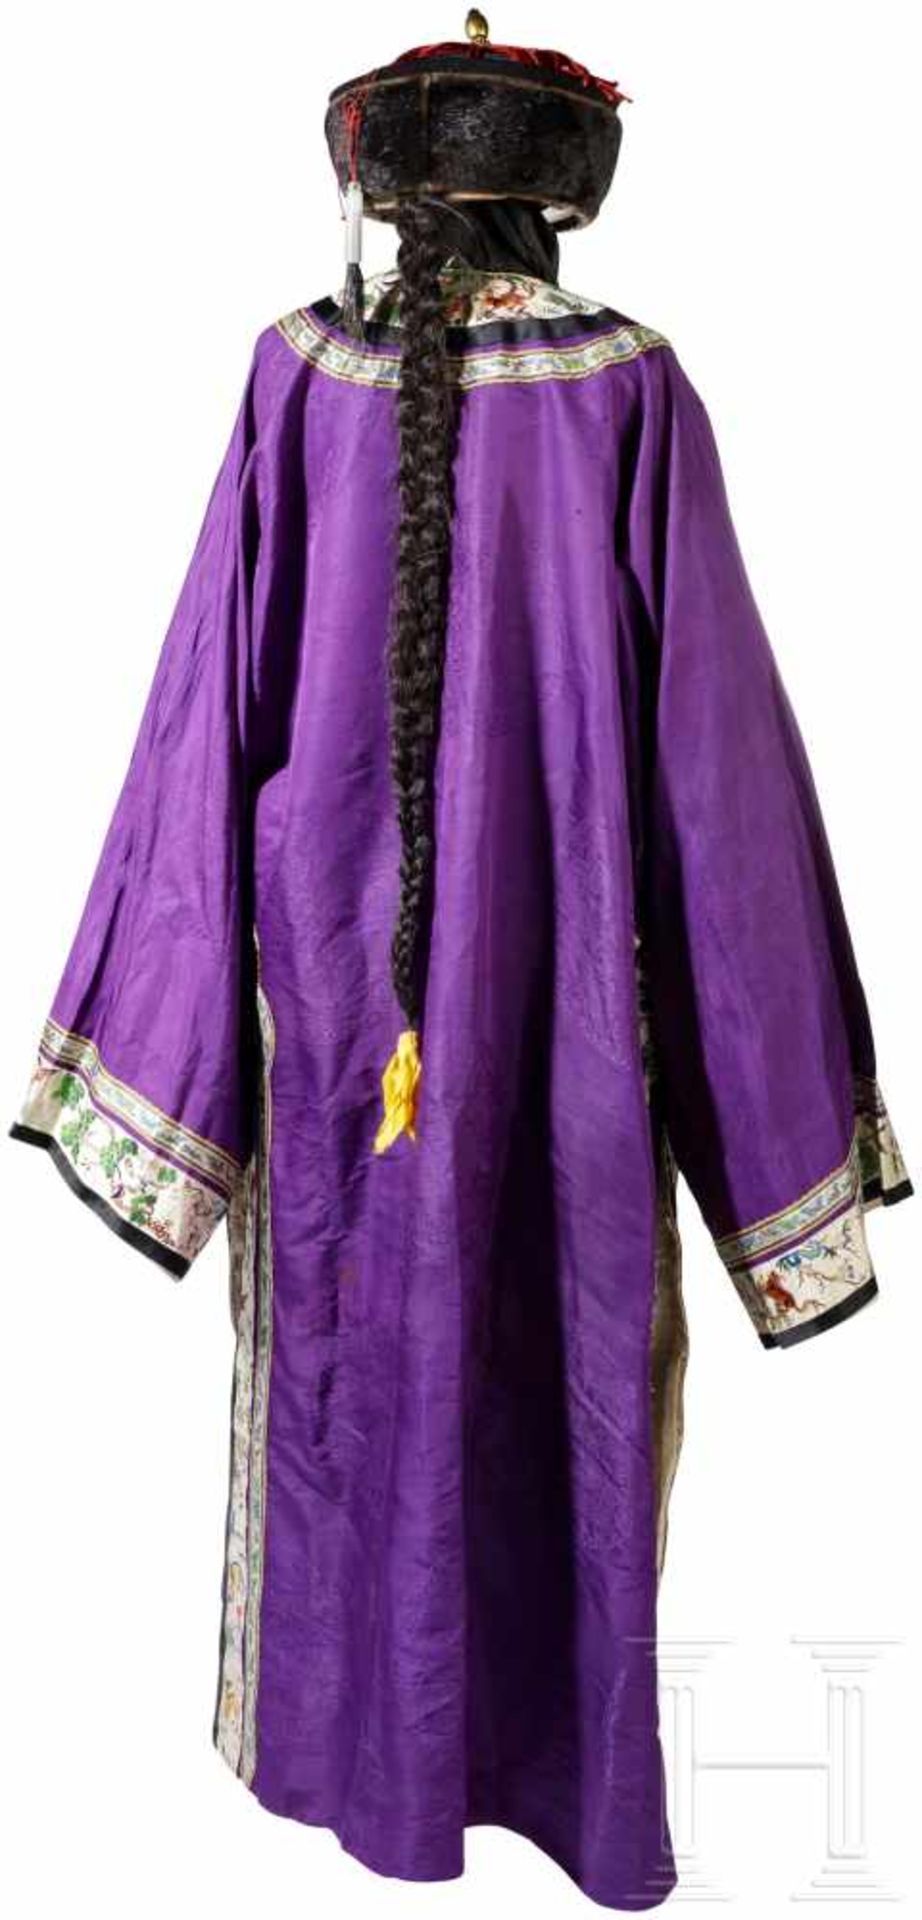 Robe und Hut eines höheren Staatsbeamten, China, 19. Jhdt.Bodenlange Robe aus violettem Seidendamast - Bild 2 aus 5